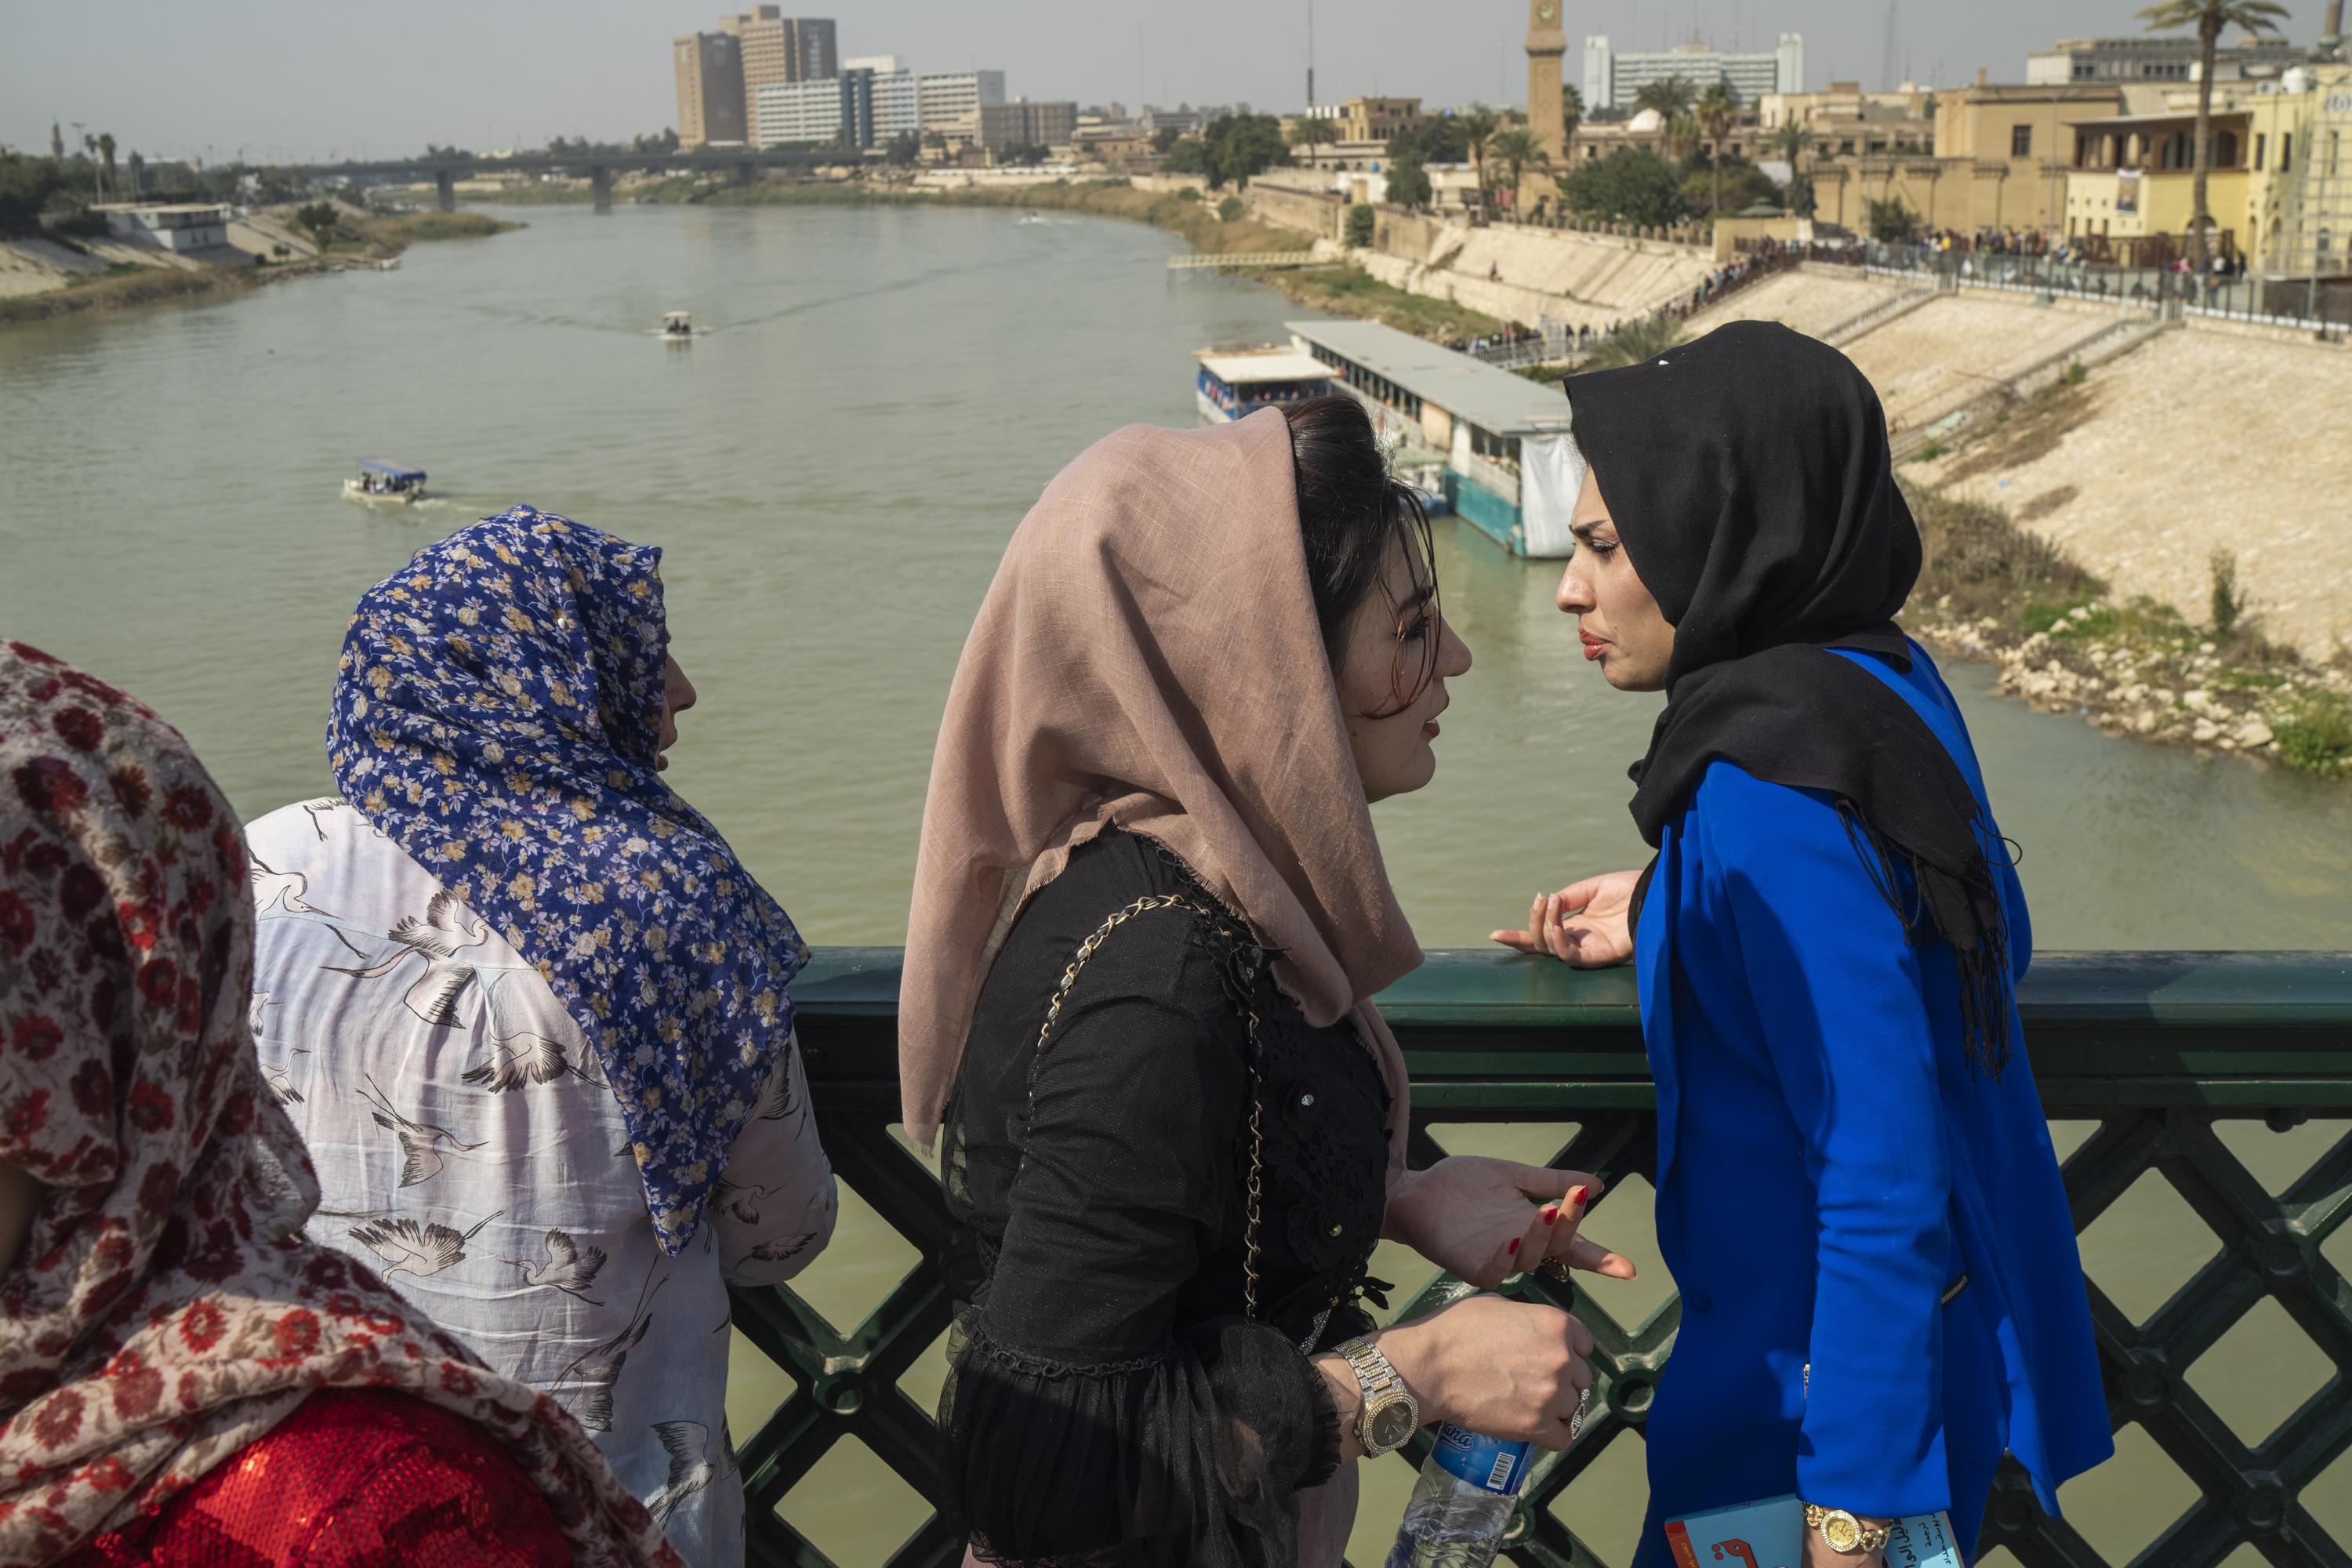 Un grupo de mujeres cruza el "puente de los mártires" sobre el rìo Tigris cuando se cumplen 20 años desde la caída del régimen de Saddam Hussein y la invasión estadounidense. (Jerome Delay/AP)